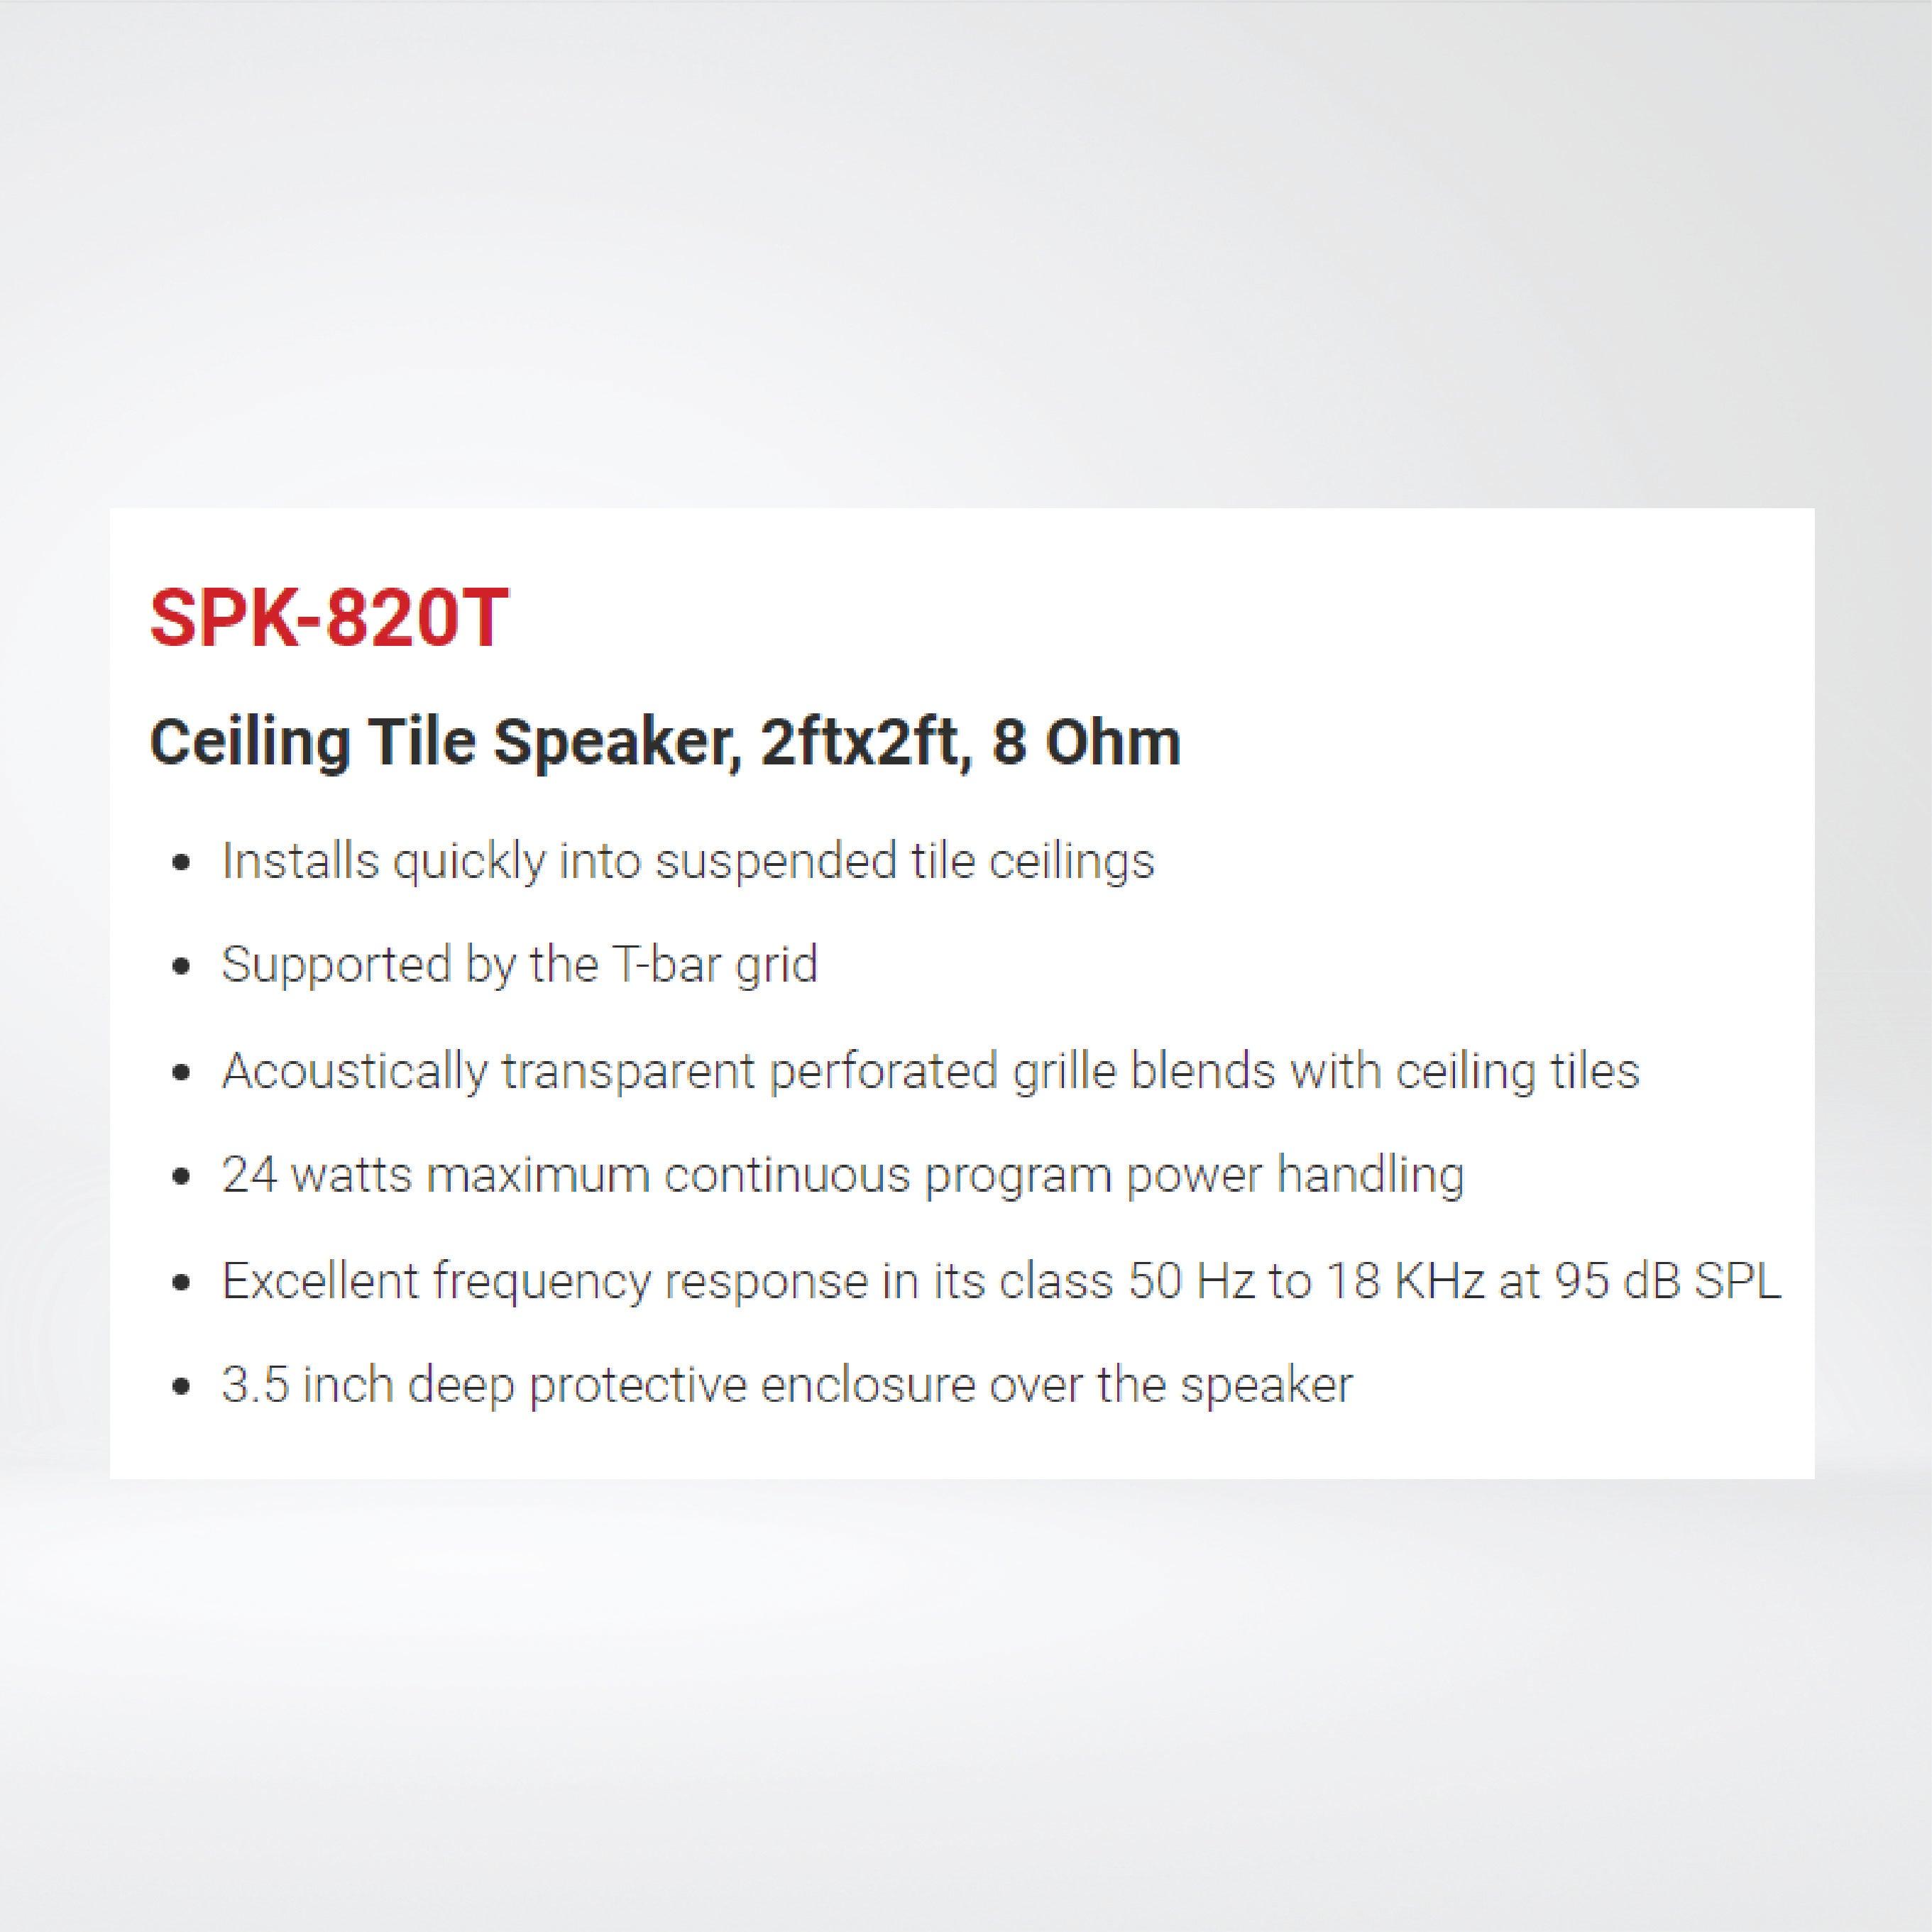 SPK-820T Ceiling Tile Speaker, 2ftx2ft, 8 Ohm - Riverplus